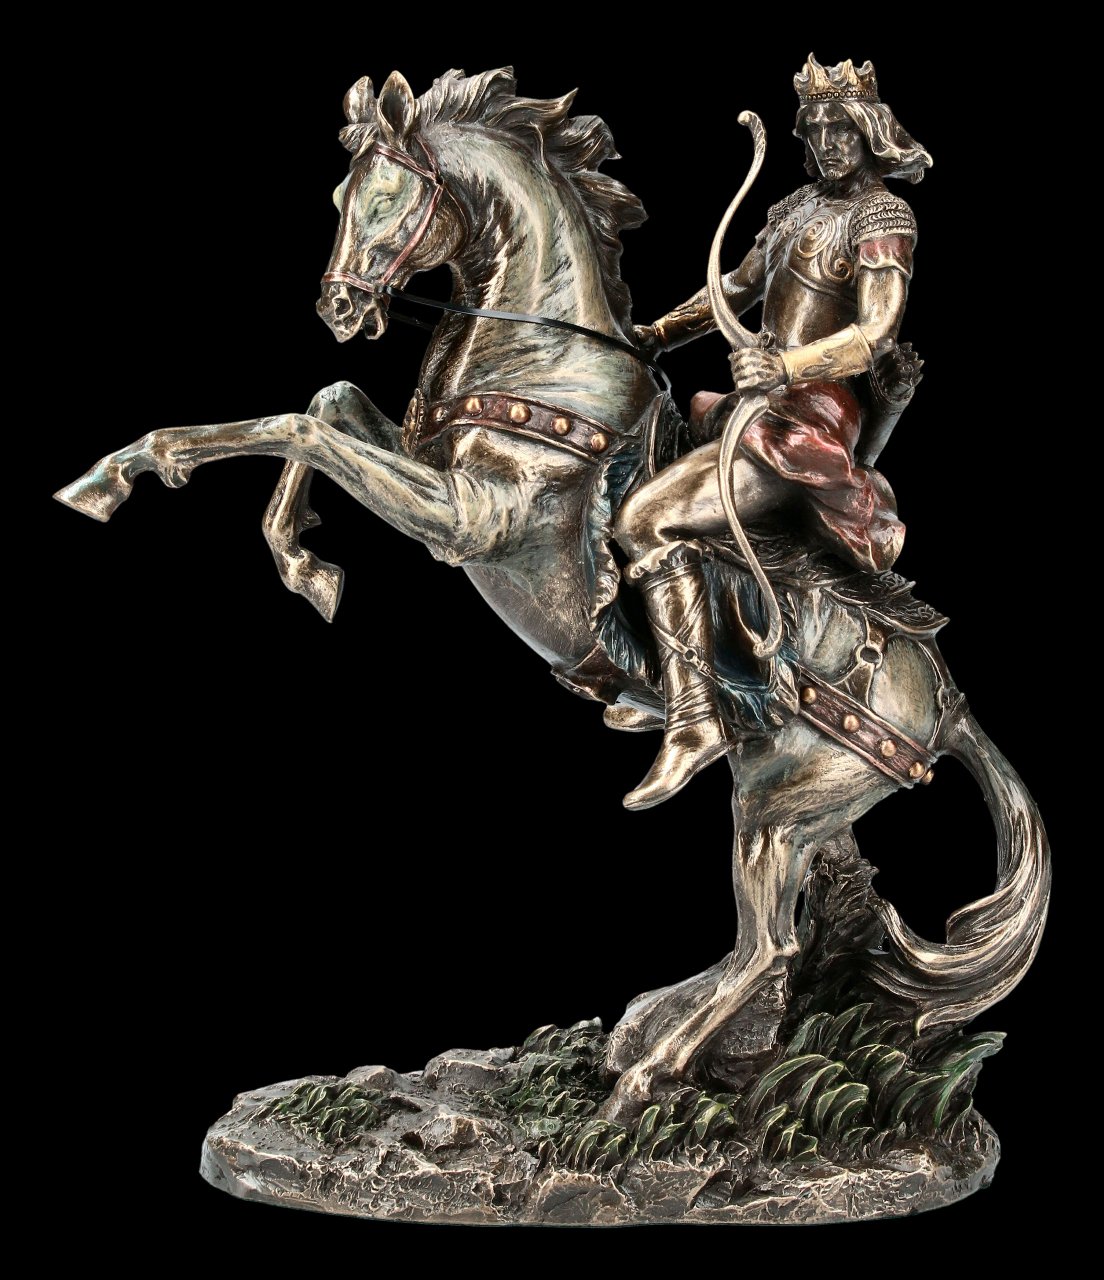 Apocalyptic Horseman Figurine - Victory & Purity